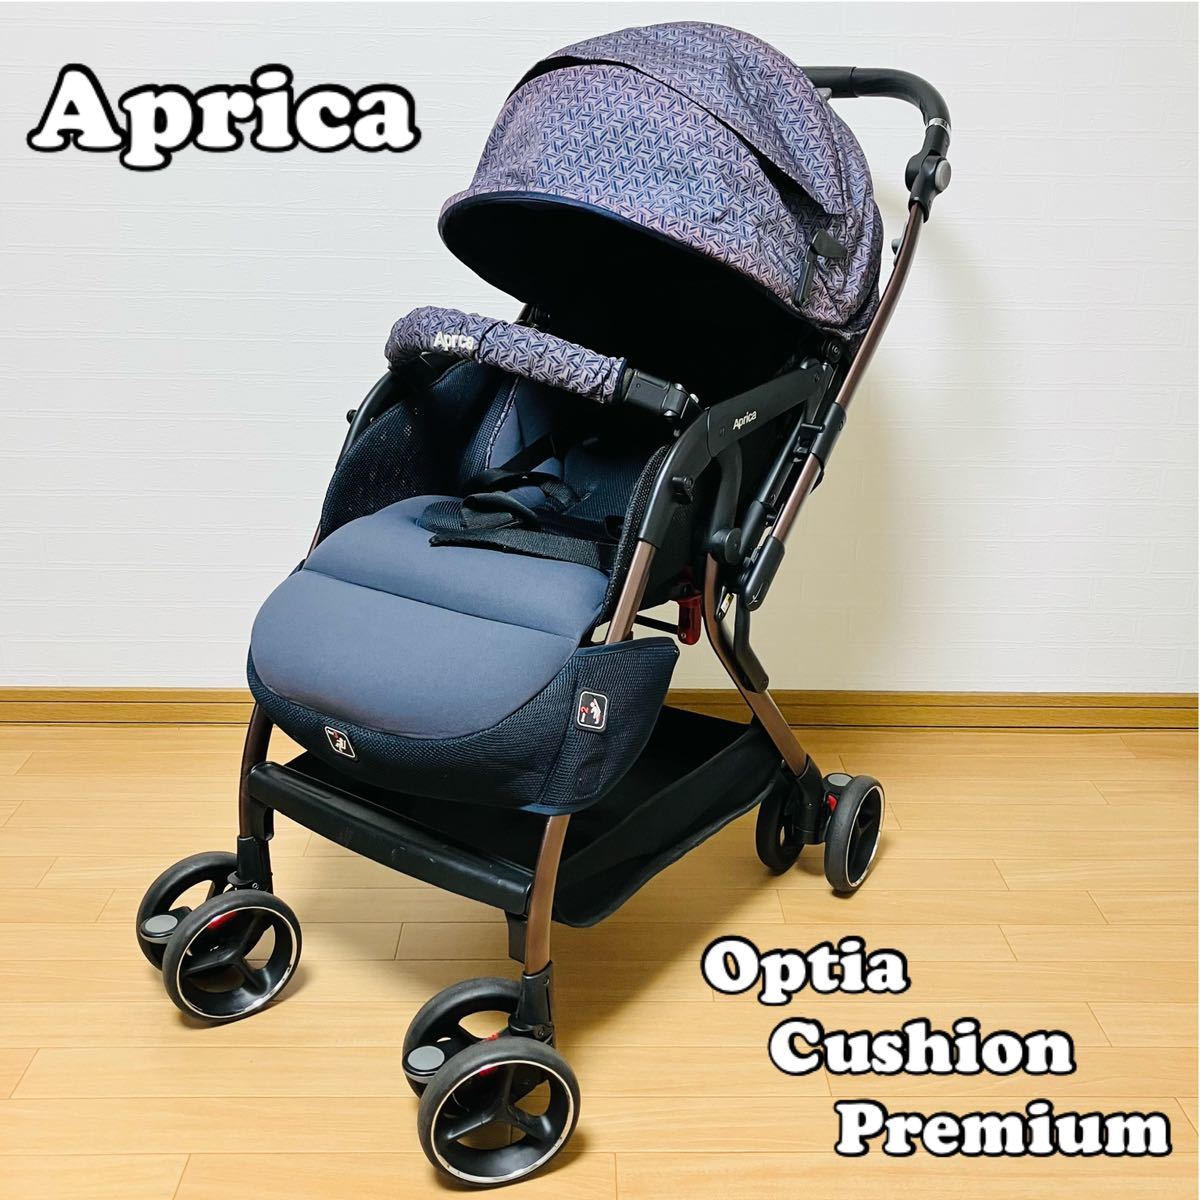 即決価格Aprica アップリカ Optia Cushion Premium オプティア